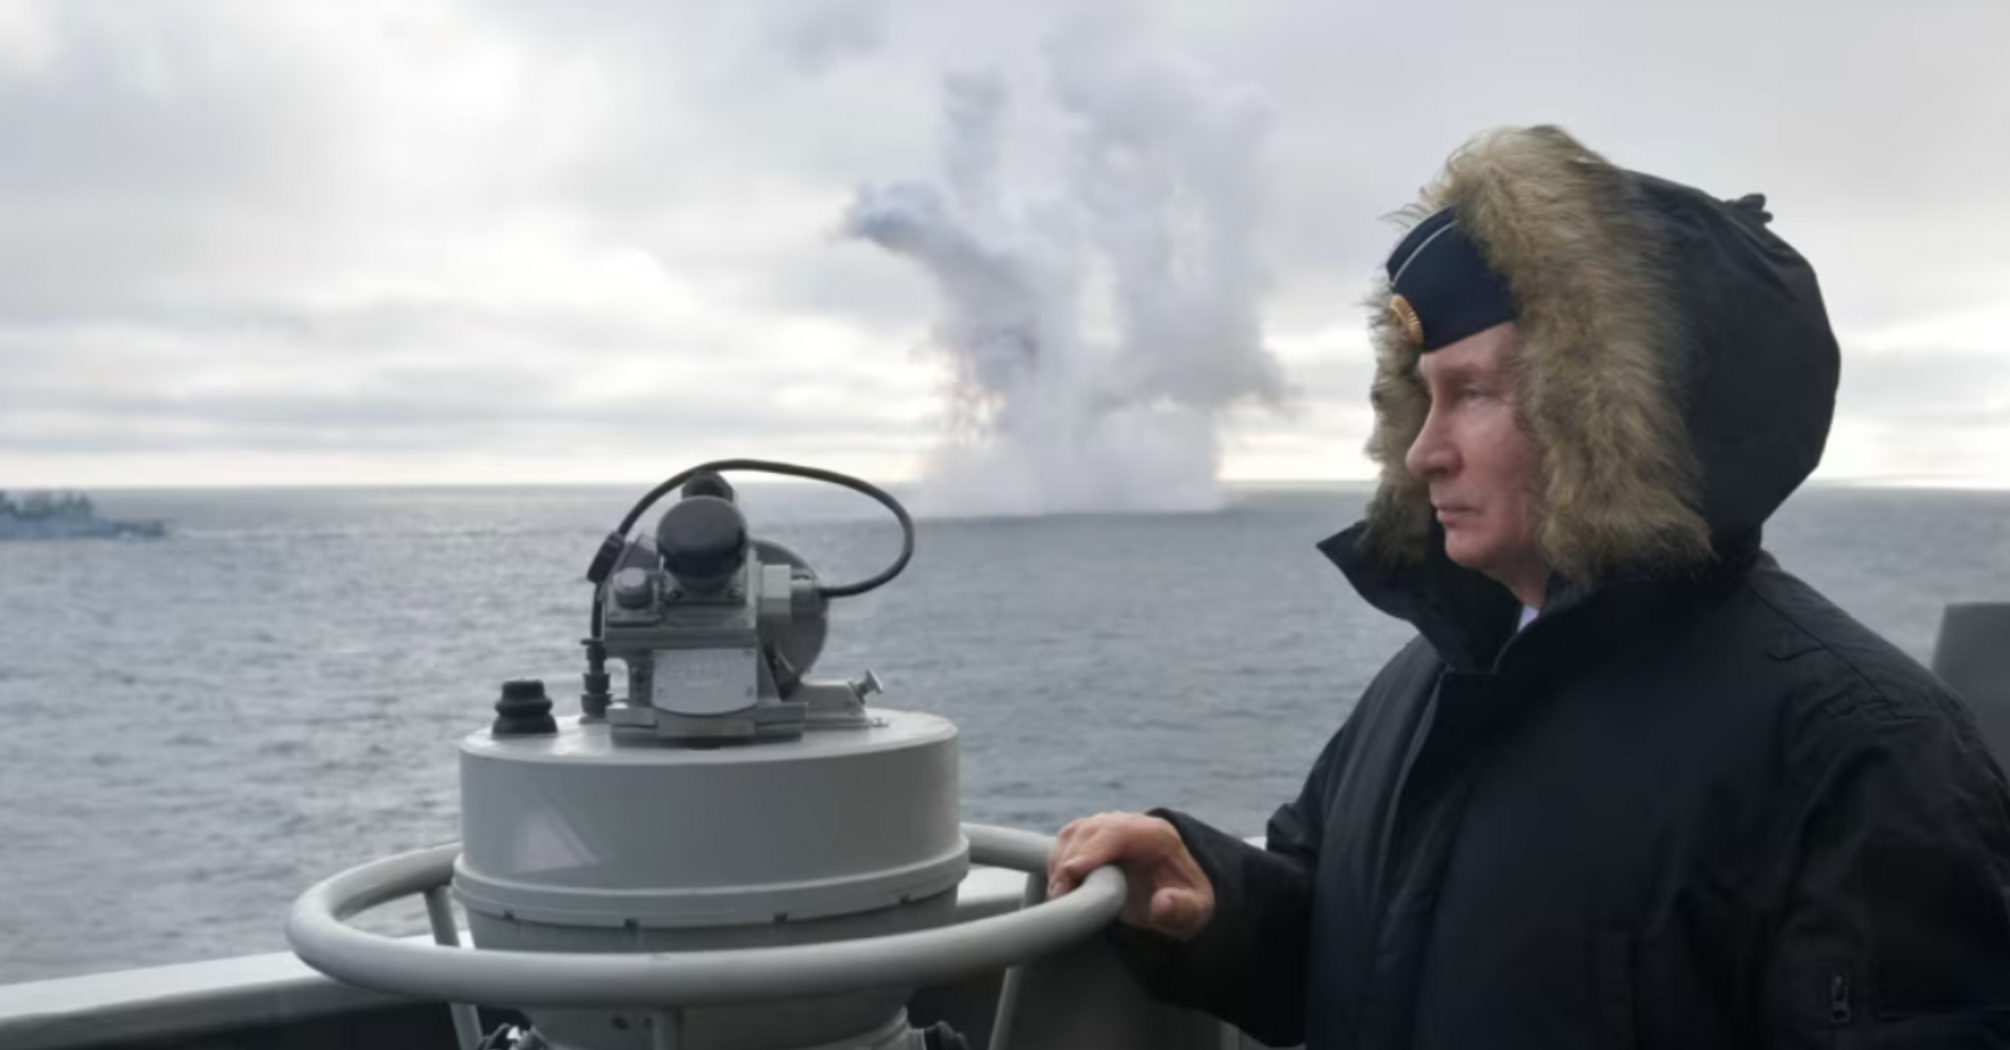 Россия меняет морские границы Если Путина не останавливают, он идет дальше.